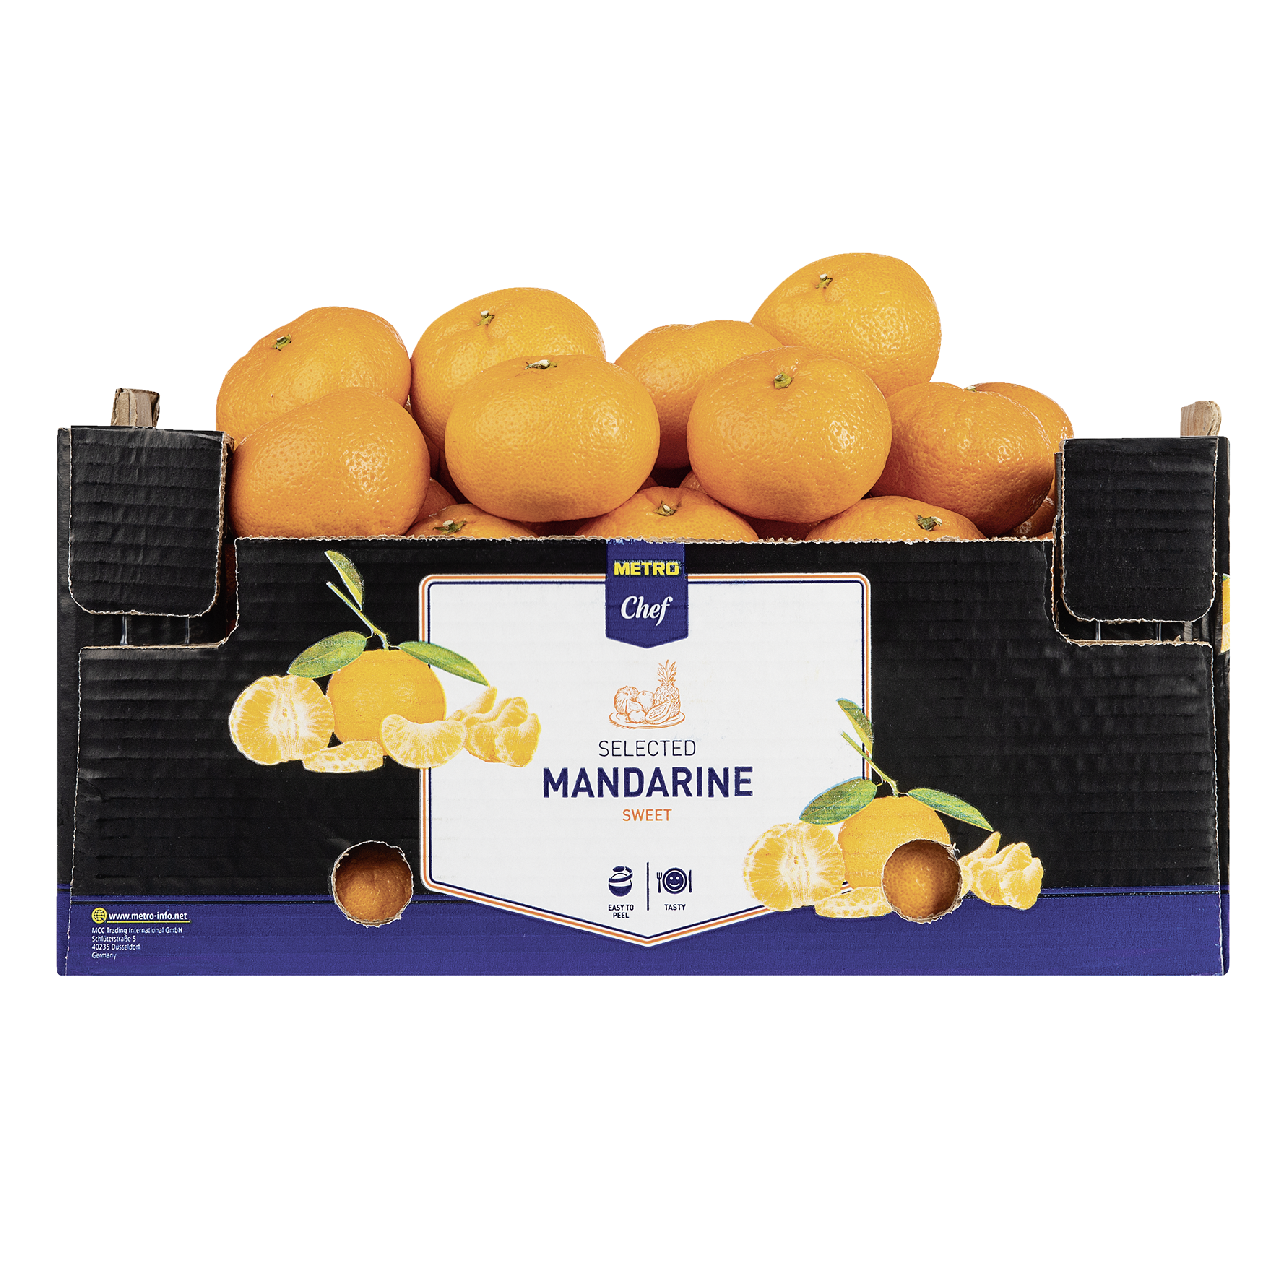 Мандарины в упаковке. Метро мандарин